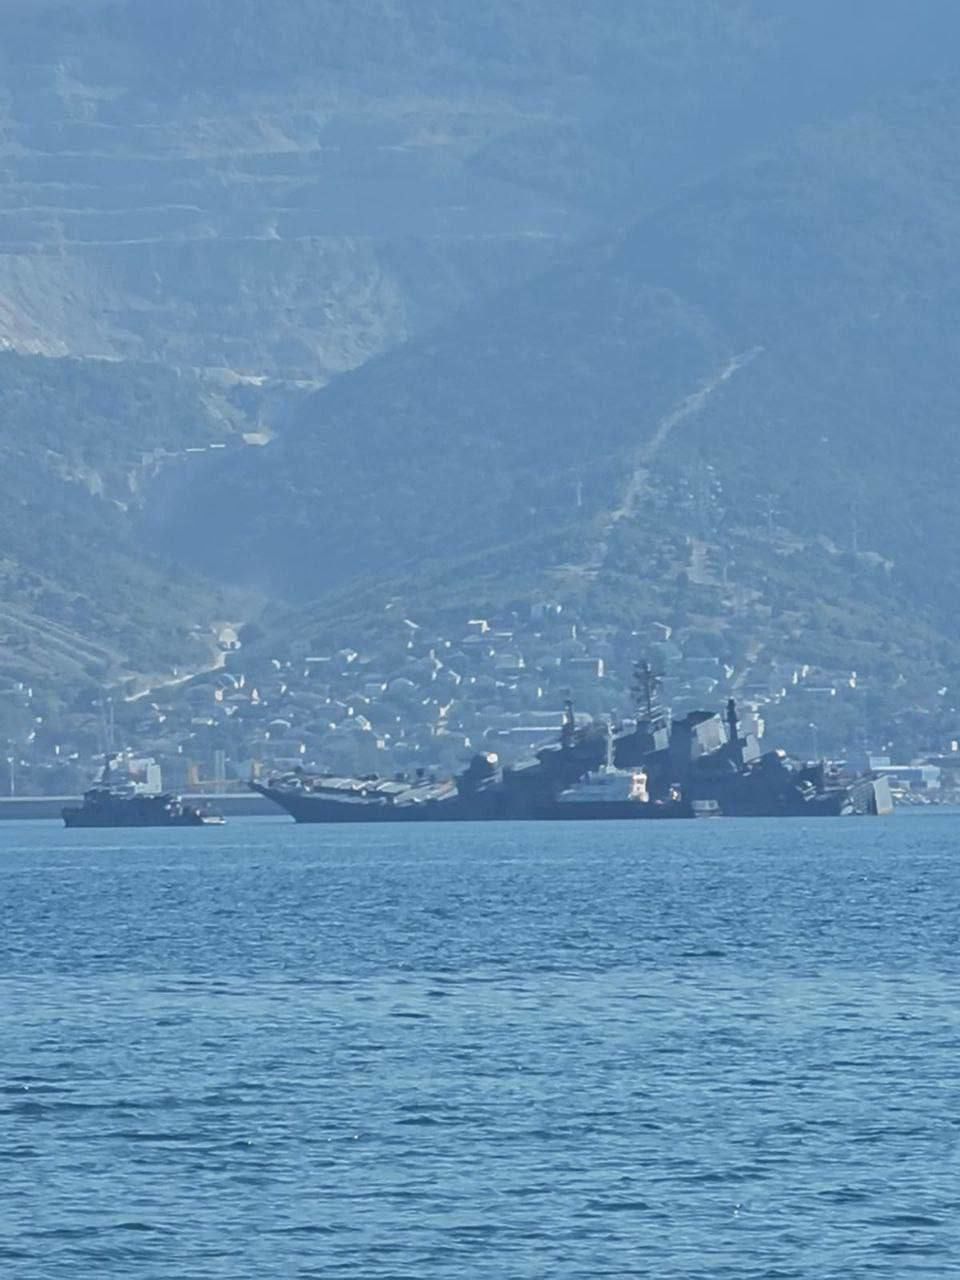 Появились подтверждения атаки на корабль "Оленегорский горняк" в бухте Новороссийска 